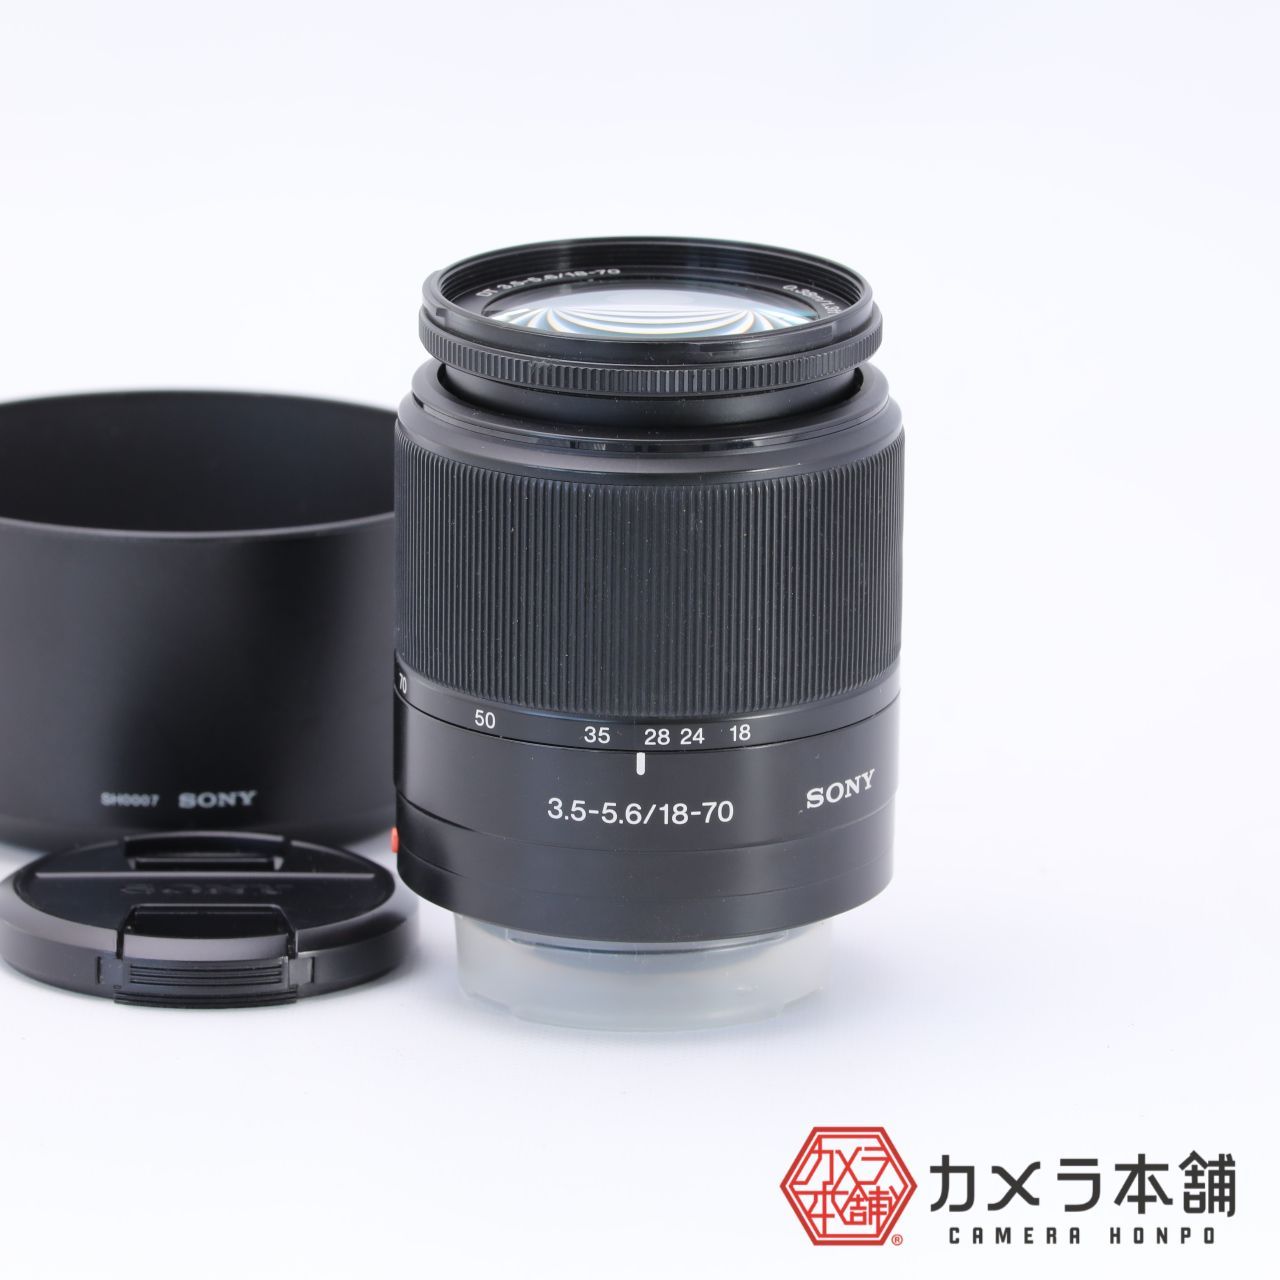 SONY レンズ DT 18-70mm F3.5-5.6 - レンズ(ズーム)